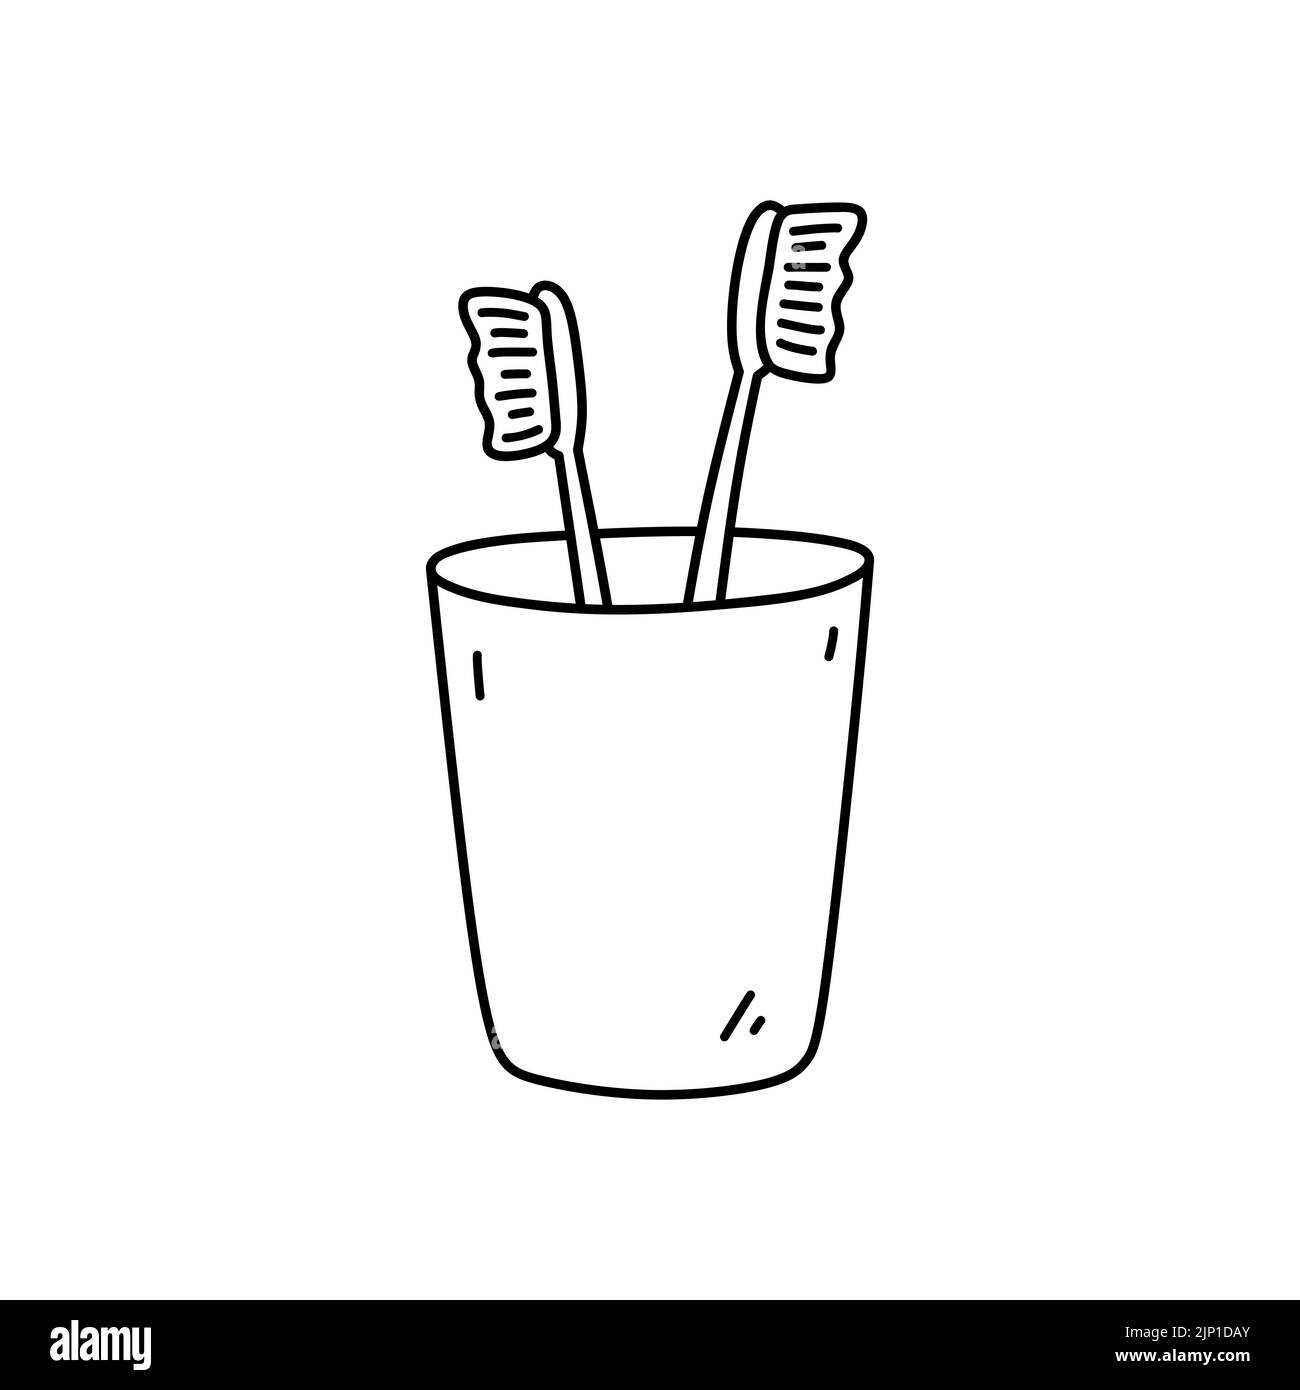 Zahnbürsten in einer Tasse isoliert auf weißem Hintergrund. Mundhygiene. Vektor-handgezeichnete Illustration im Doodle-Stil. Perfekt für Dekorationen, Logo, verschiedene Designs. Stock Vektor